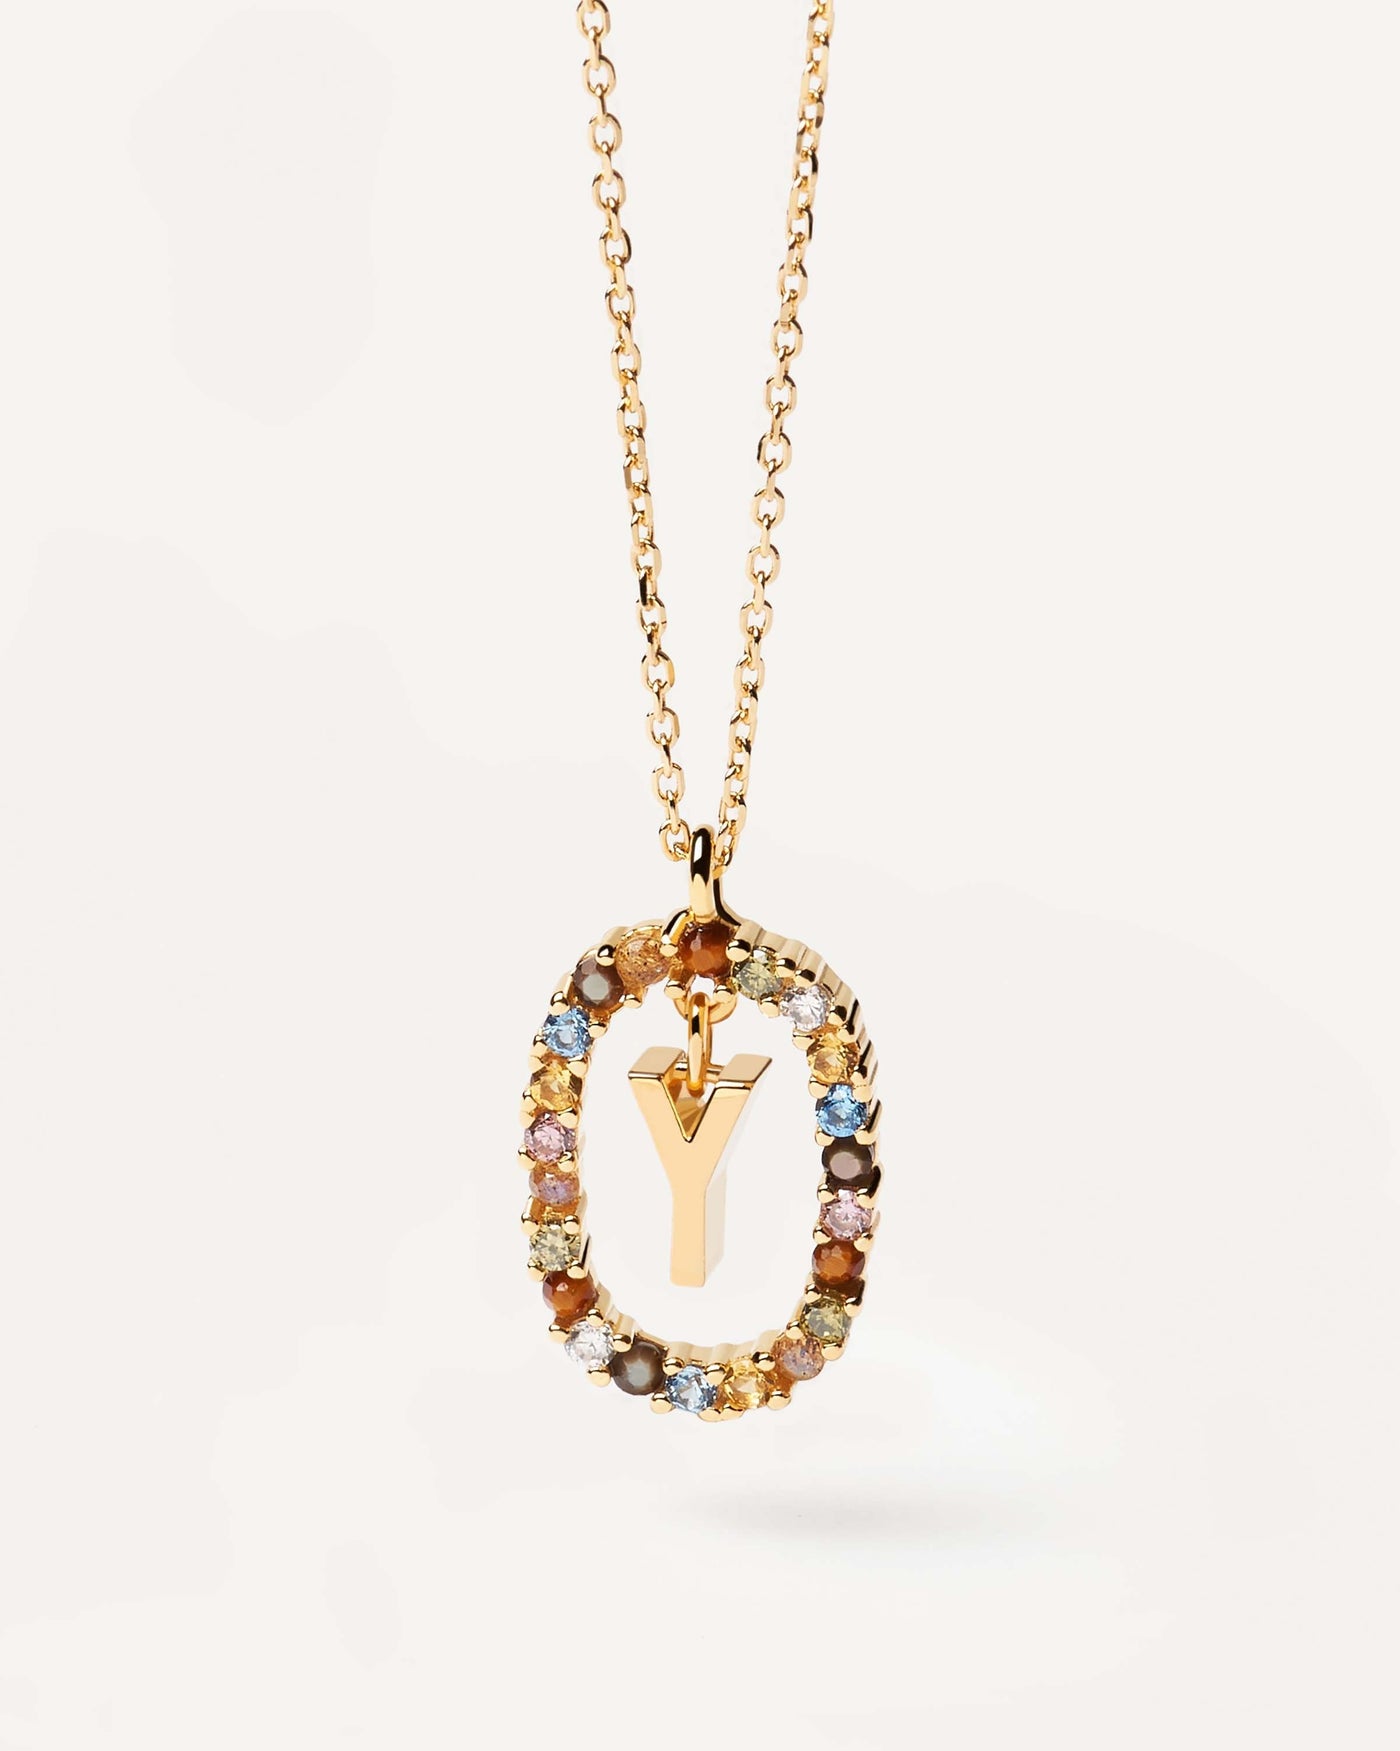 Buchstaben Y Halskette. Initiale Y-Halskette aus vergoldetem Silber, umgeben von bunten Edelsteinen. Erhalten Sie die neuesten Produkte von PDPAOLA. Geben Sie Ihre Bestellung sicher auf und erhalten Sie diesen Bestseller.